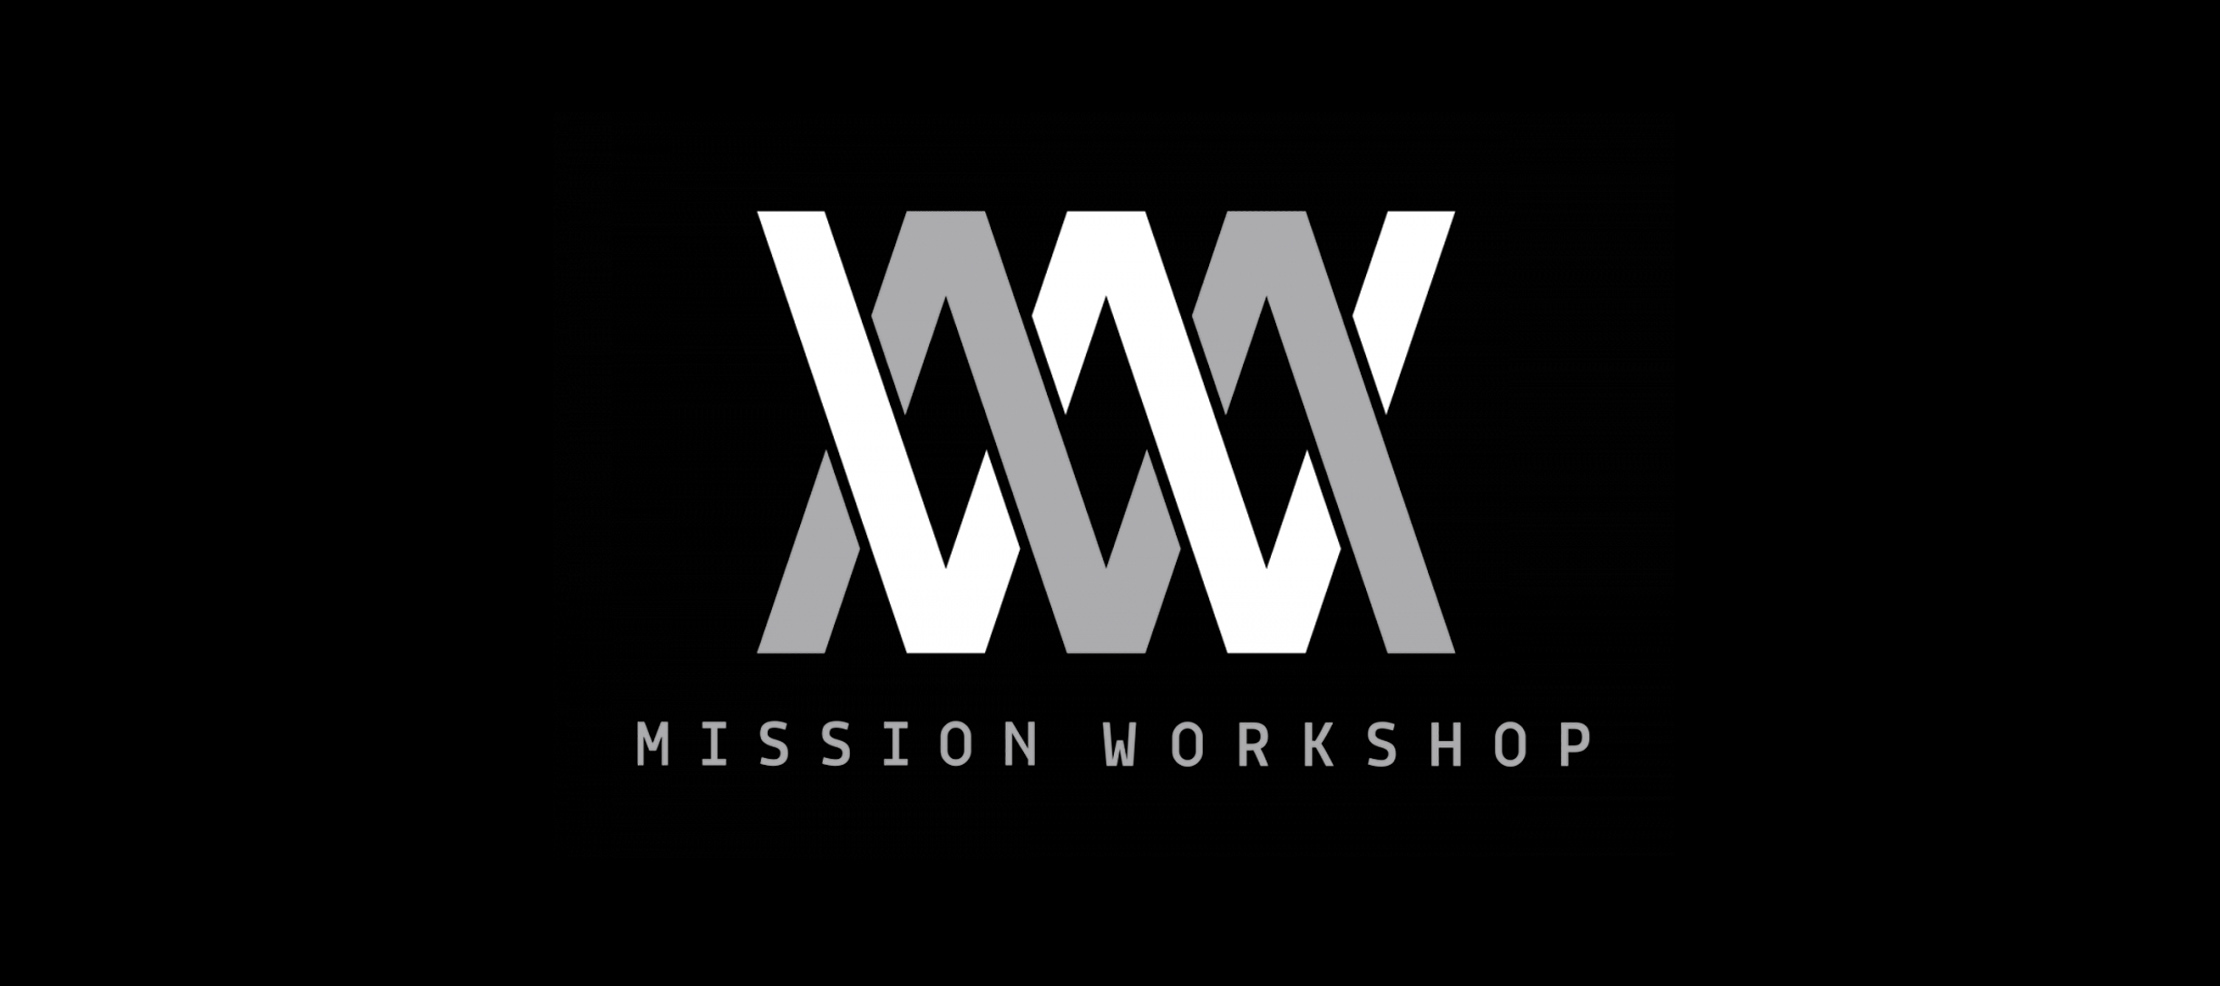 Mission Workshop